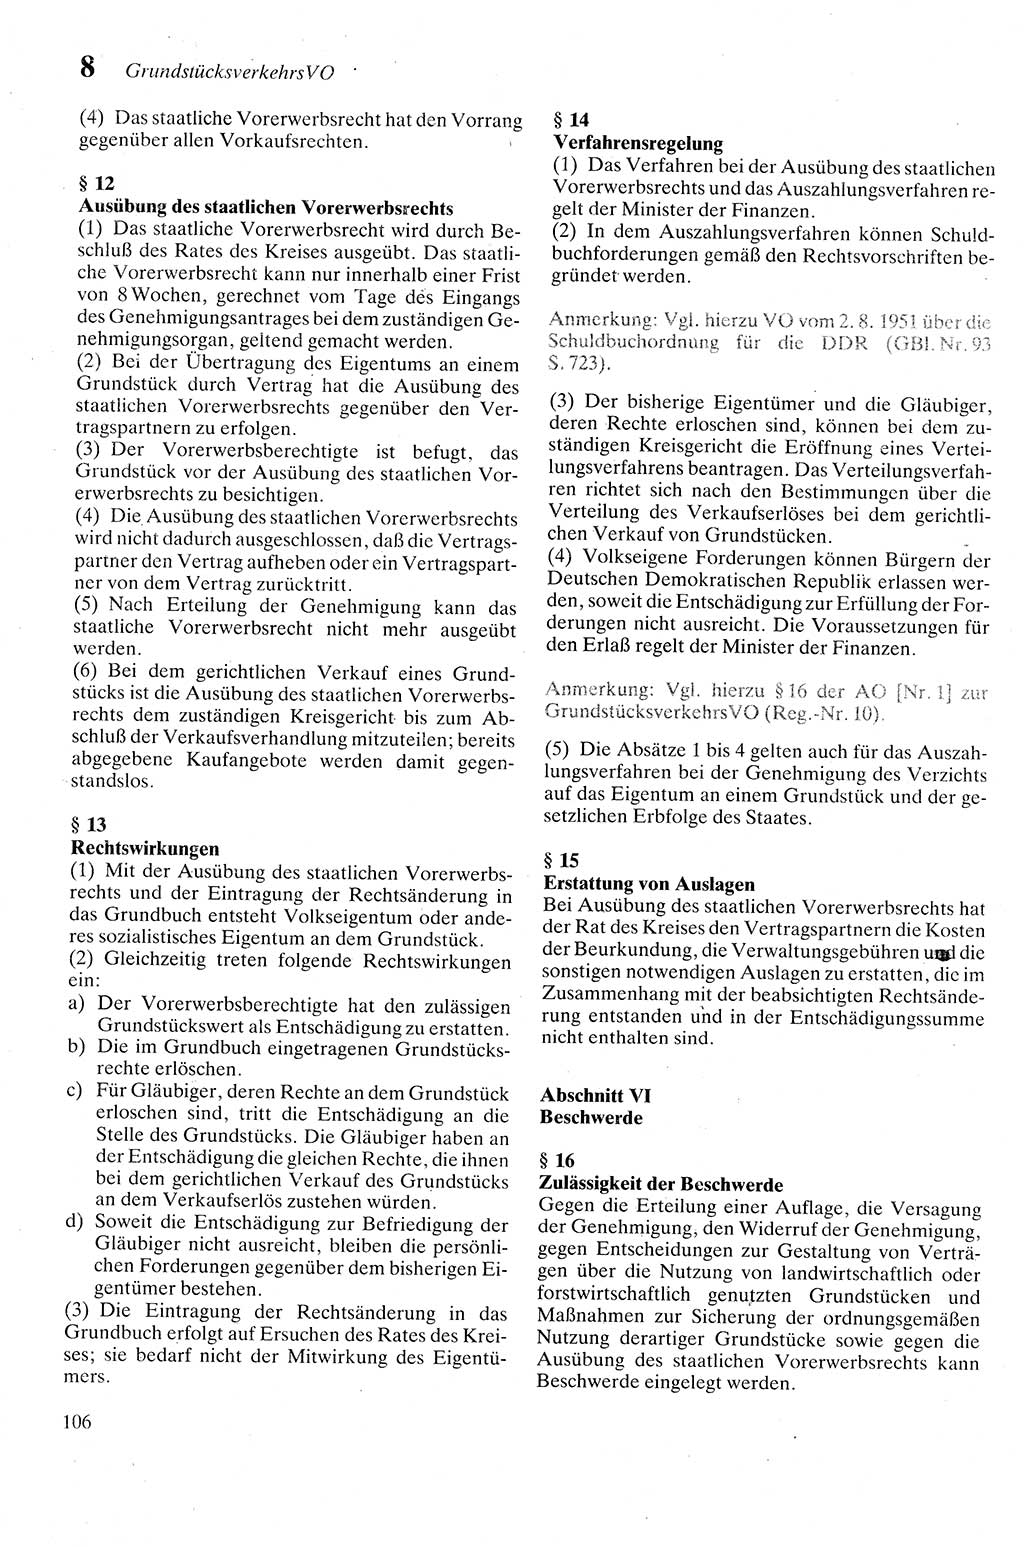 Zivilgesetzbuch (ZVG) sowie angrenzende Gesetze und Bestimmungen [Deutsche Demokratische Republik (DDR)] 1975, Seite 106 (ZGB Ges. Best. DDR 1975, S. 106)